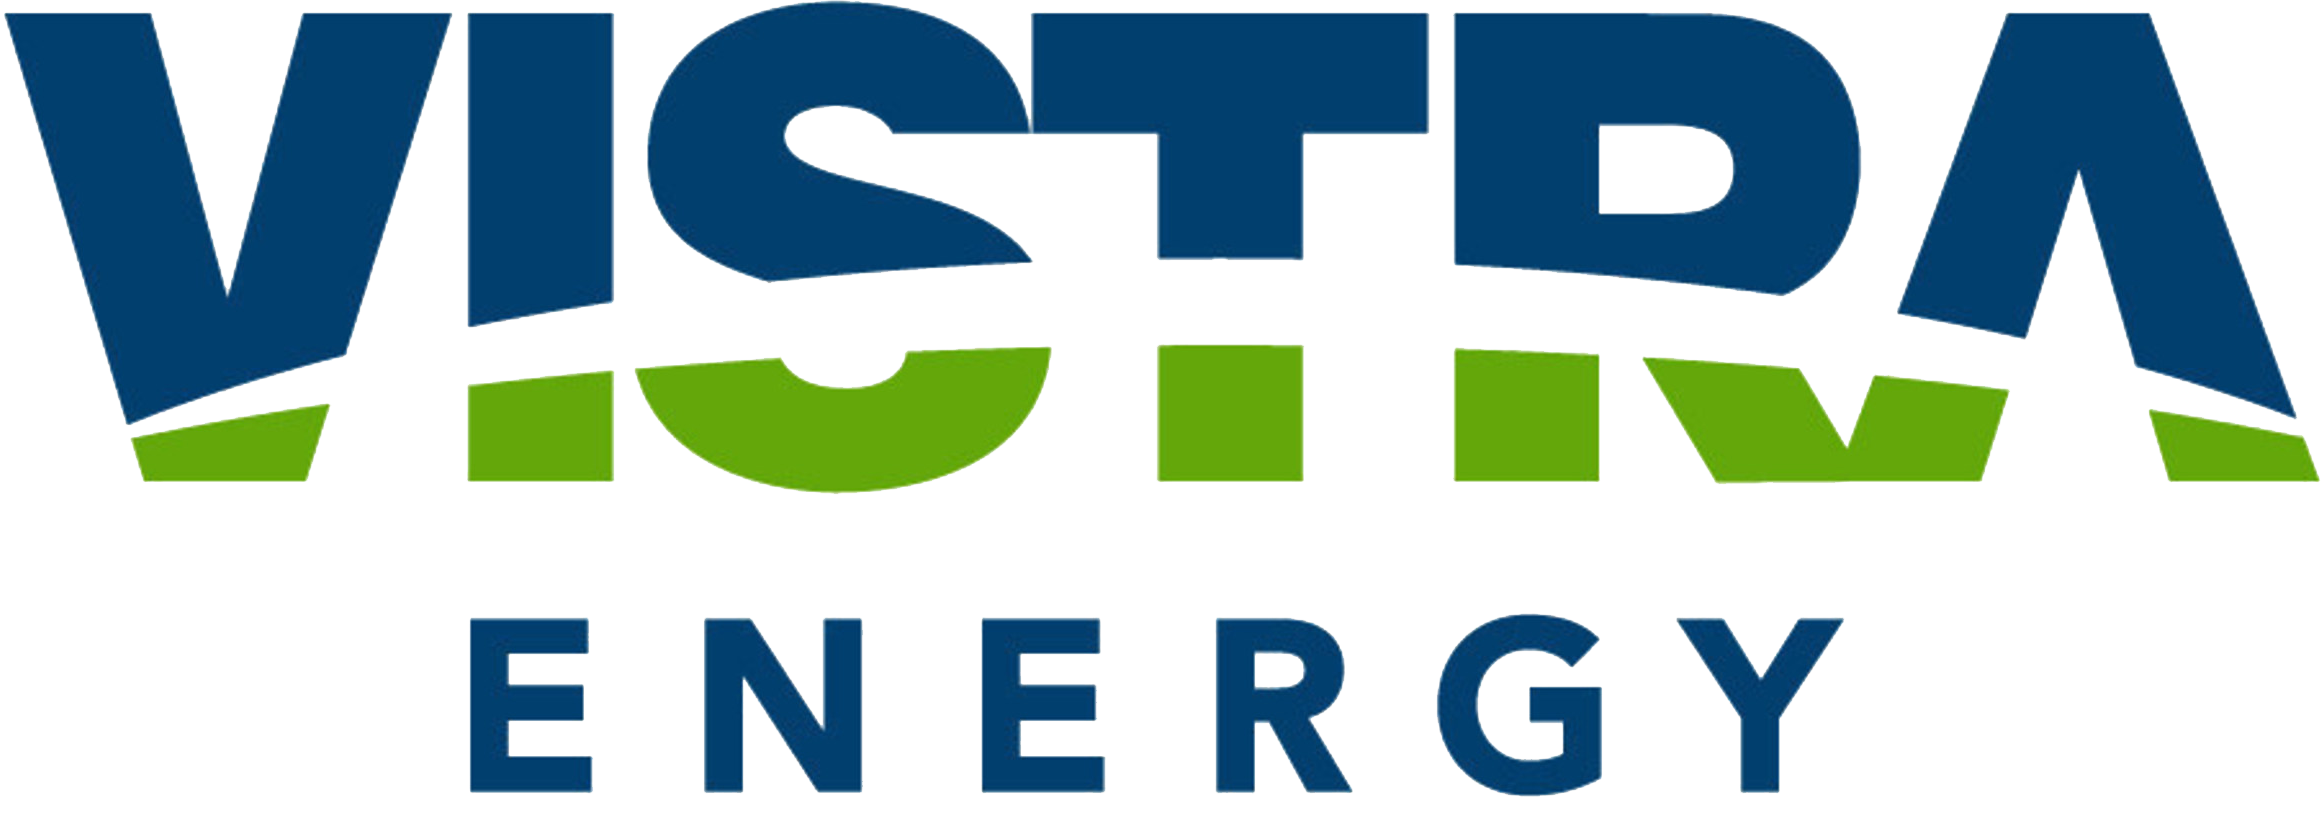 Vistra-Energy_Logo